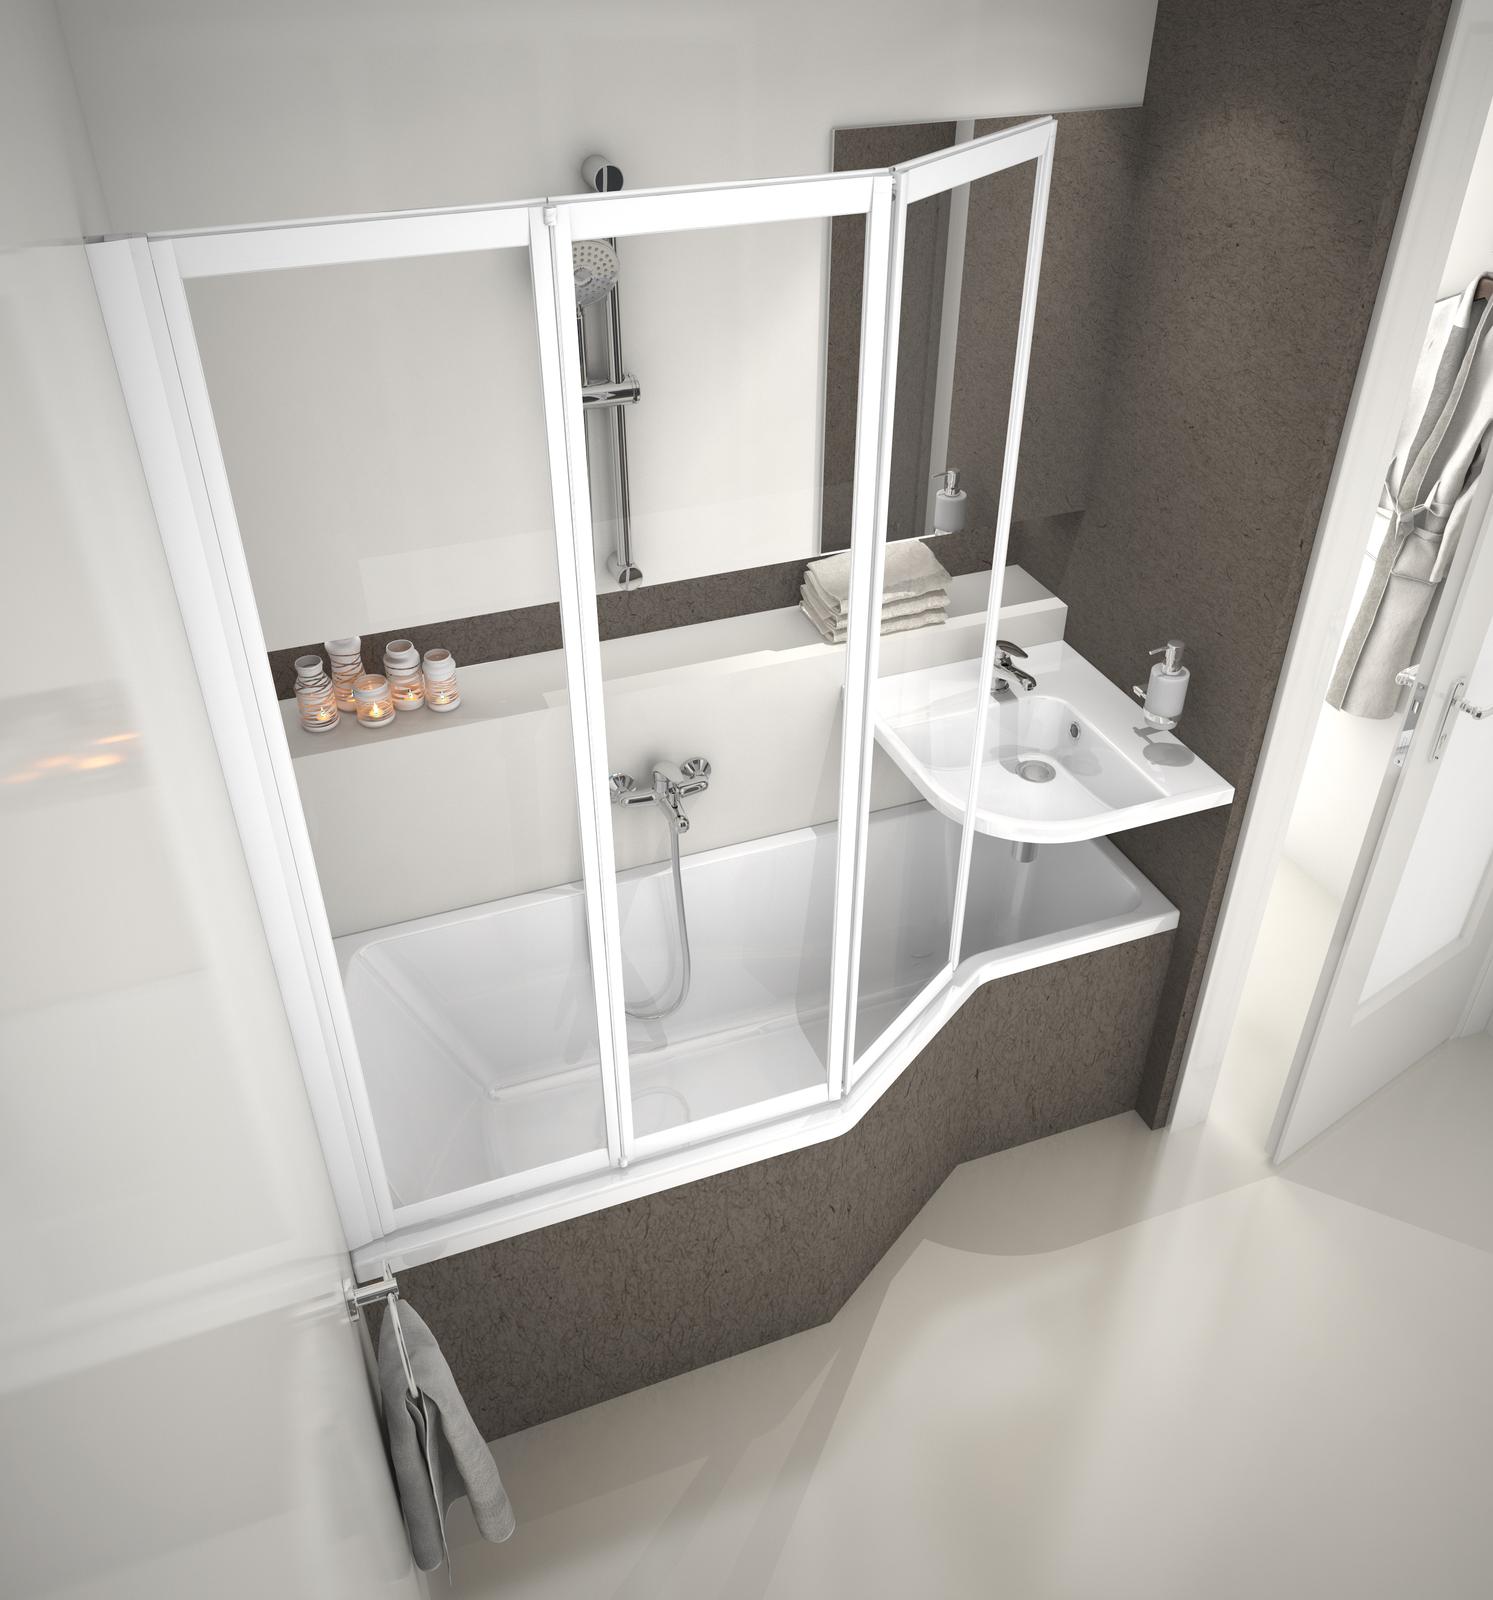 A BeHappy fürdőszoba koncepció innovatív mosdója a kád alsó vége fölé függeszthető. Helytakarékos megoldás kis fürdőszobába.